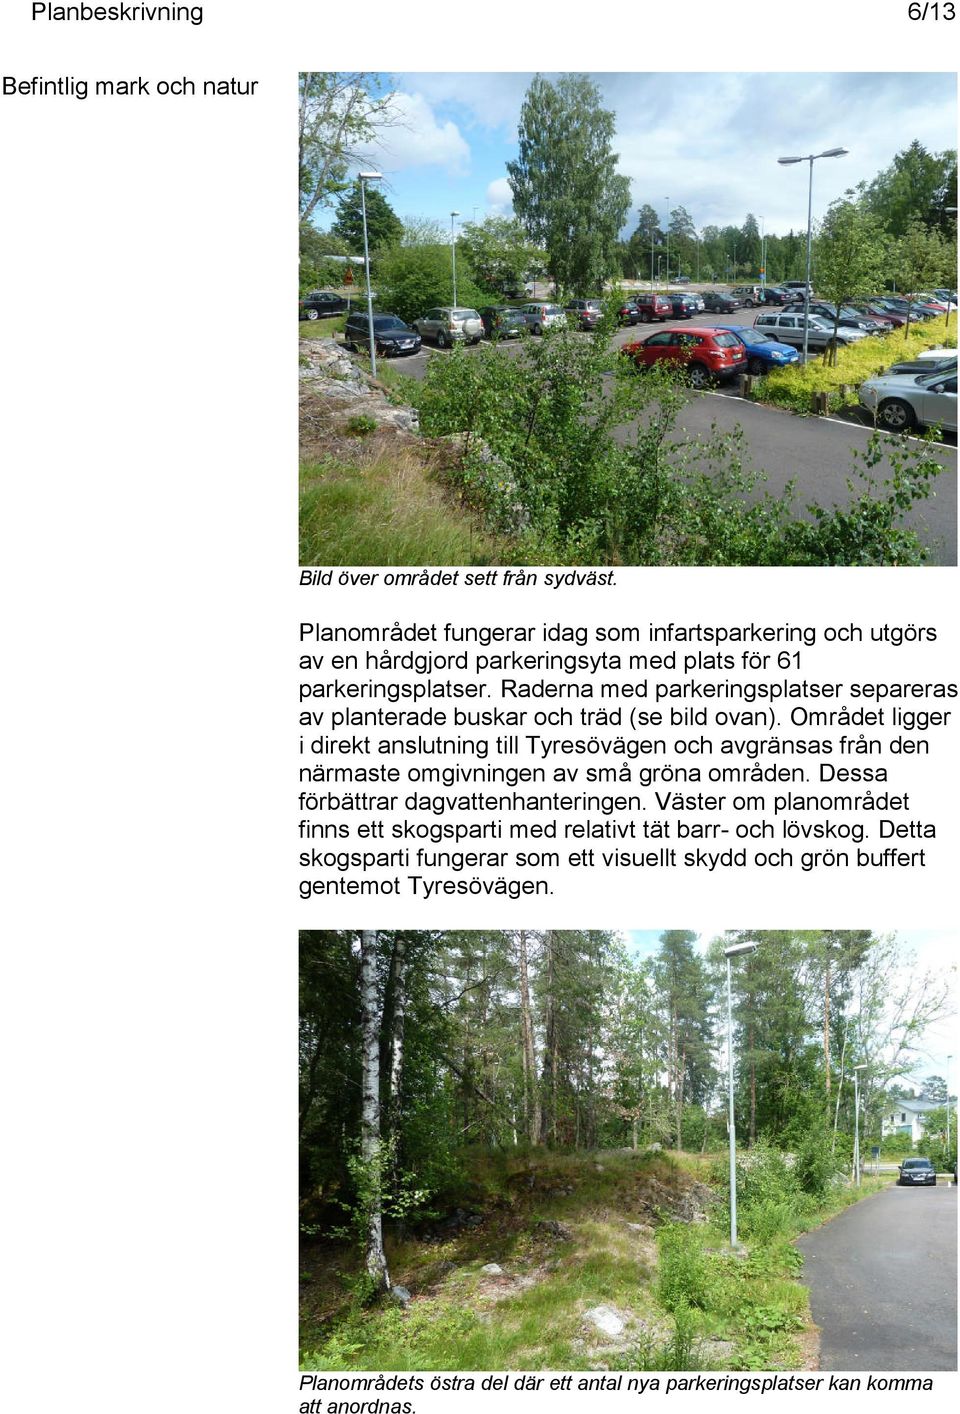 Raderna med parkeringsplatser separeras av planterade buskar och träd (se bild ovan).